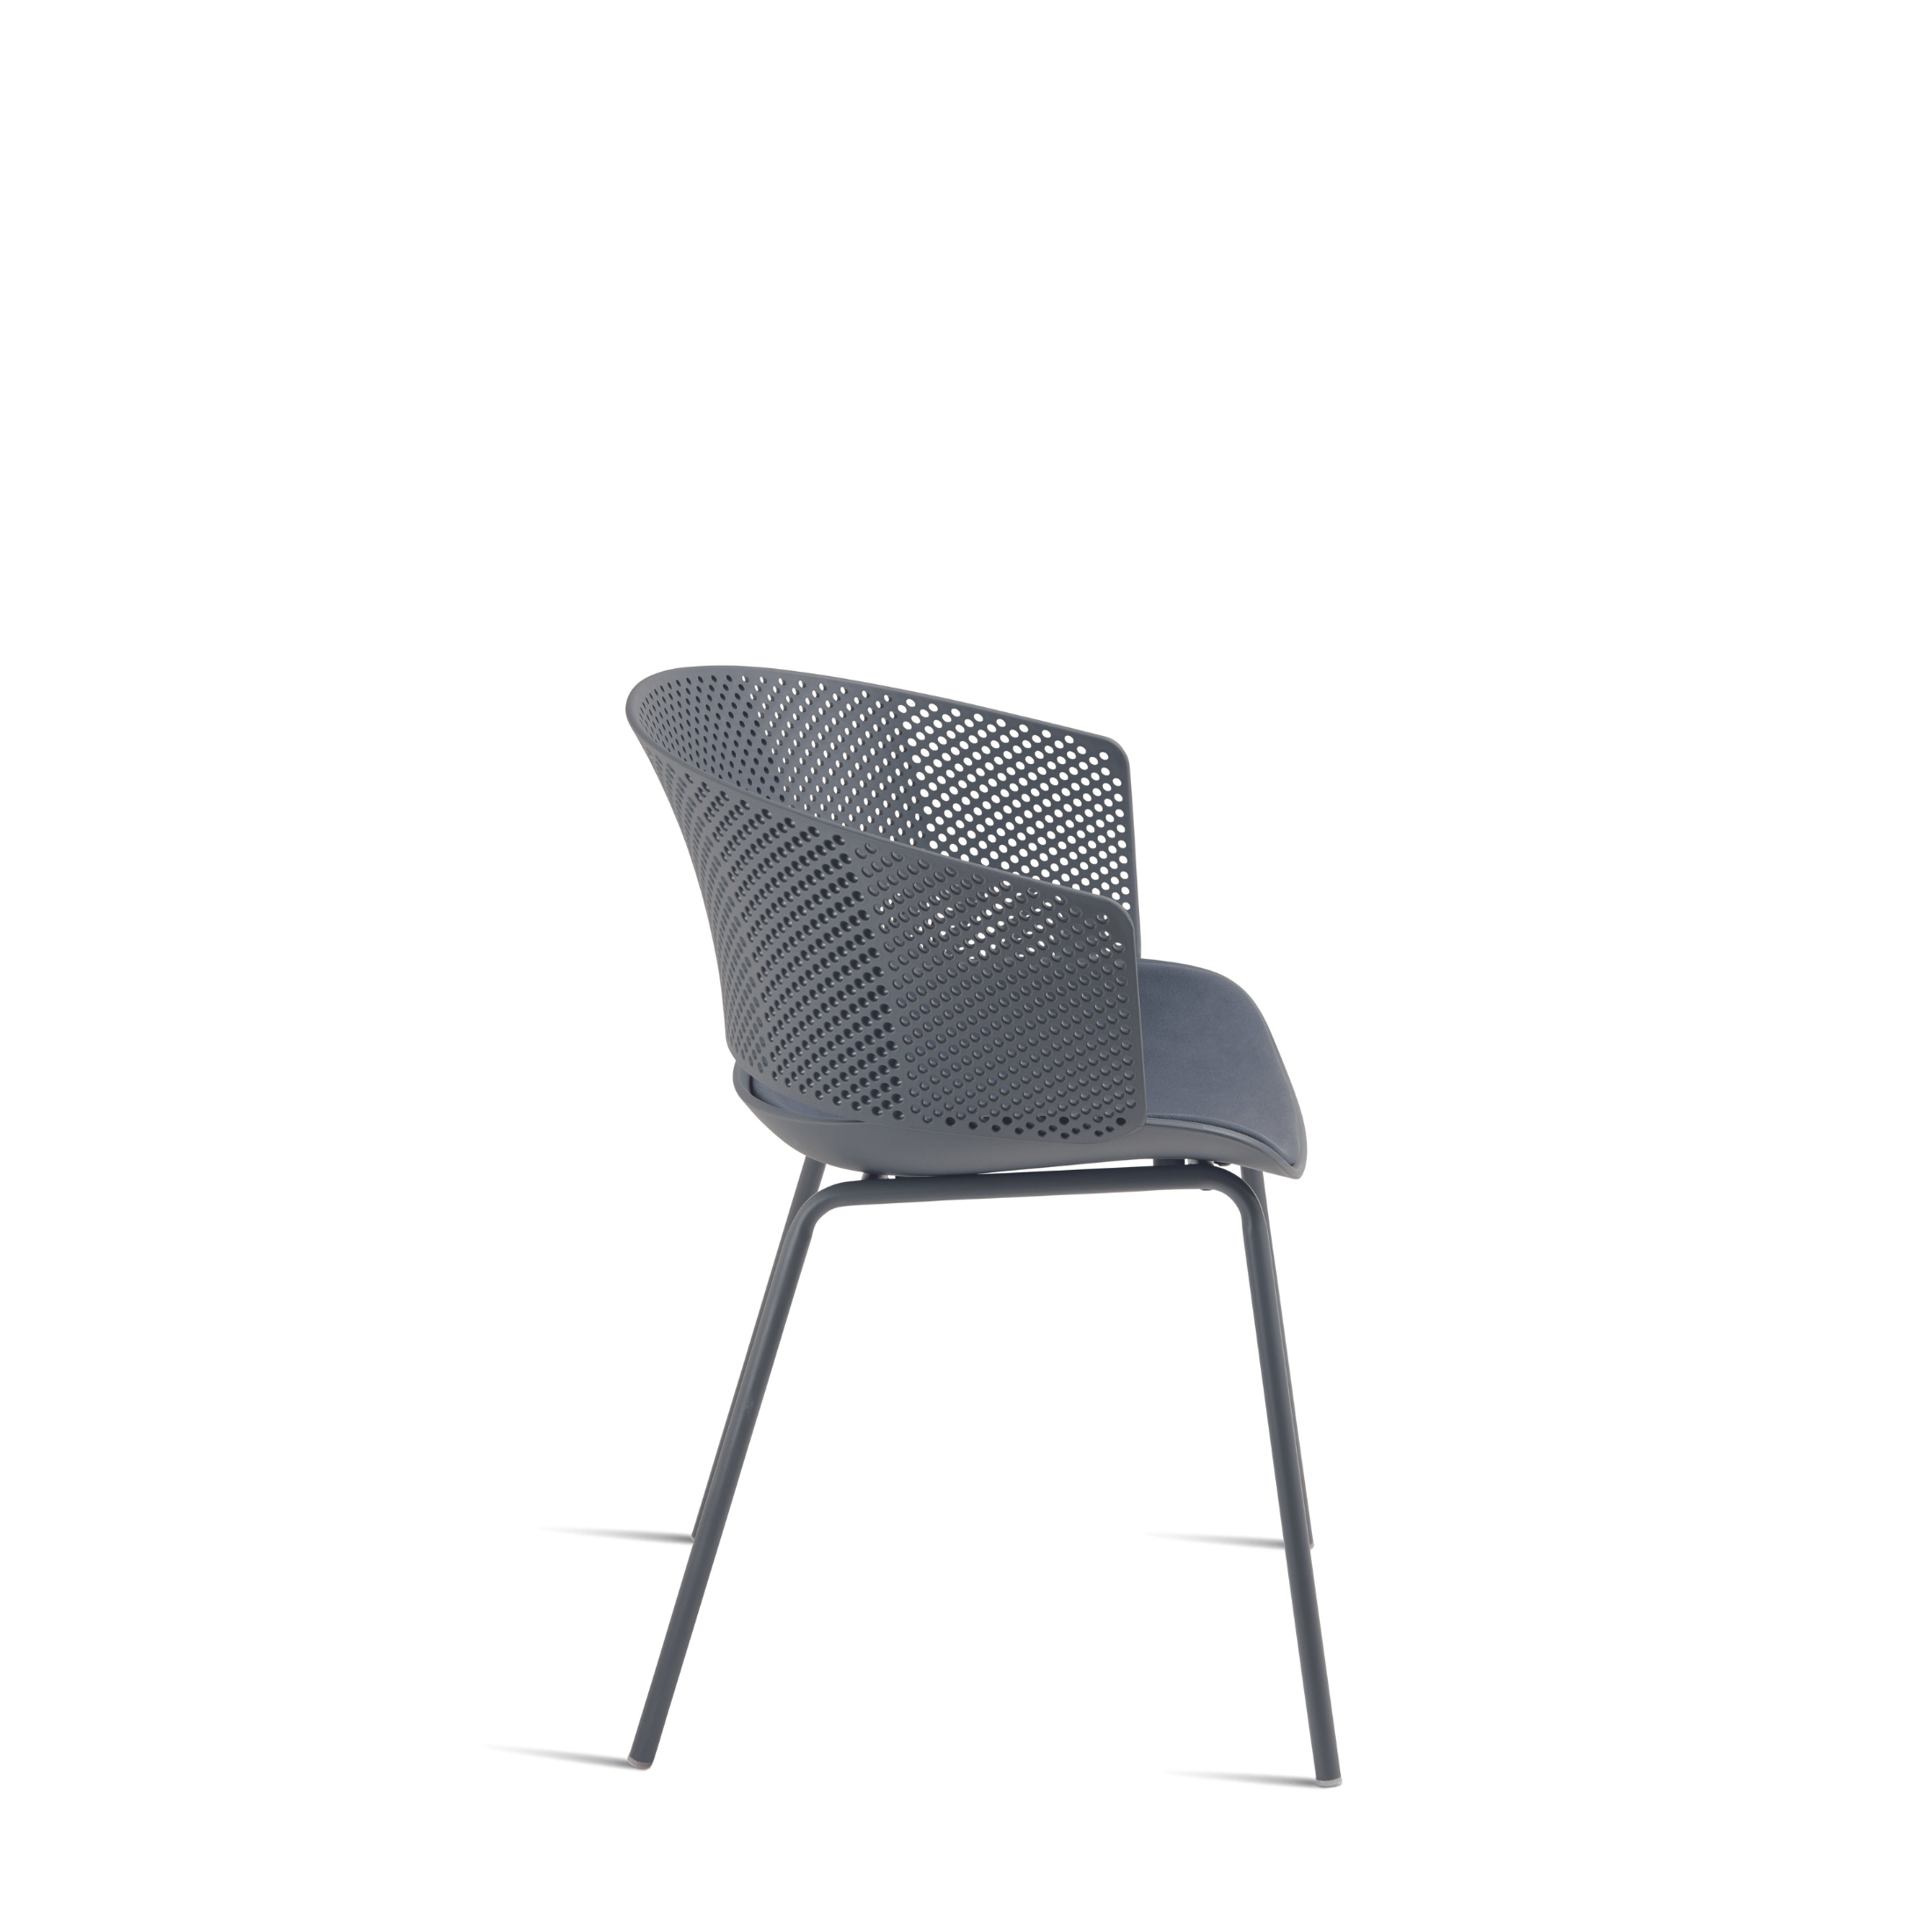 Chaise moderne en polypropylène "Cutolo" avec assise rembourrée 59x53 cm 78h